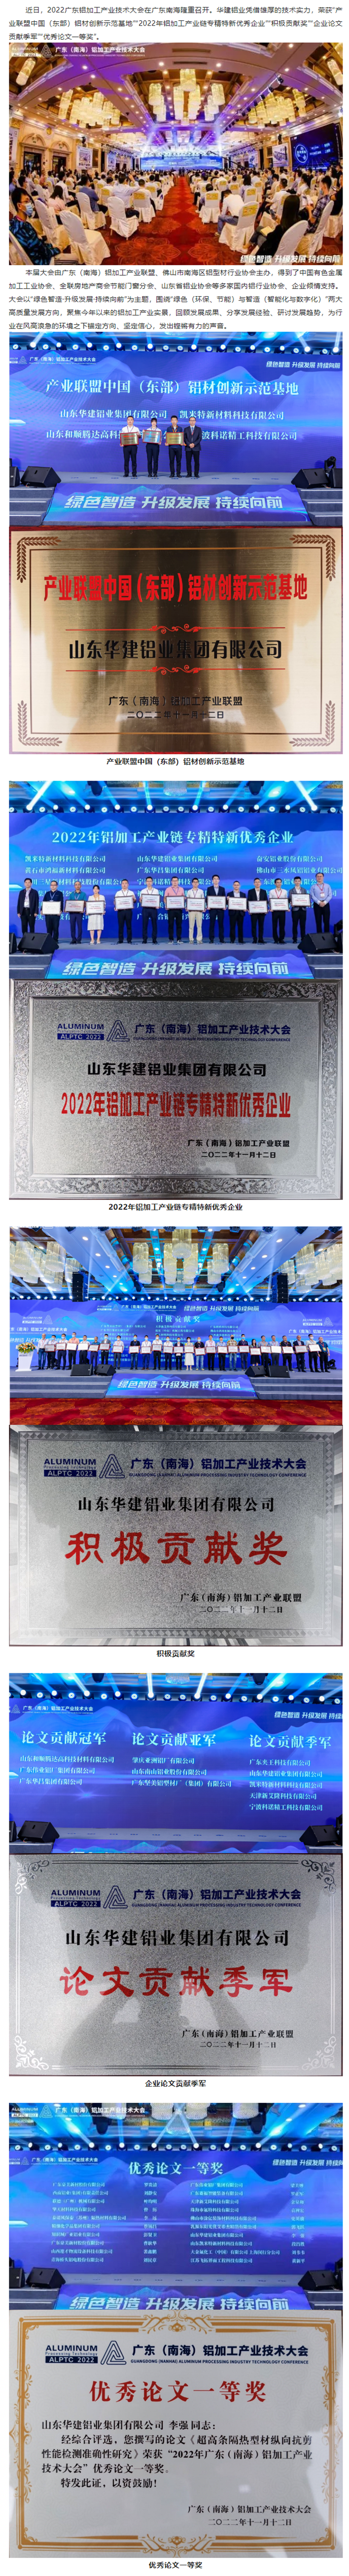 华建铝业出席广东（南海）铝加工产业技术大会并荣获多个奖项11_副本.png